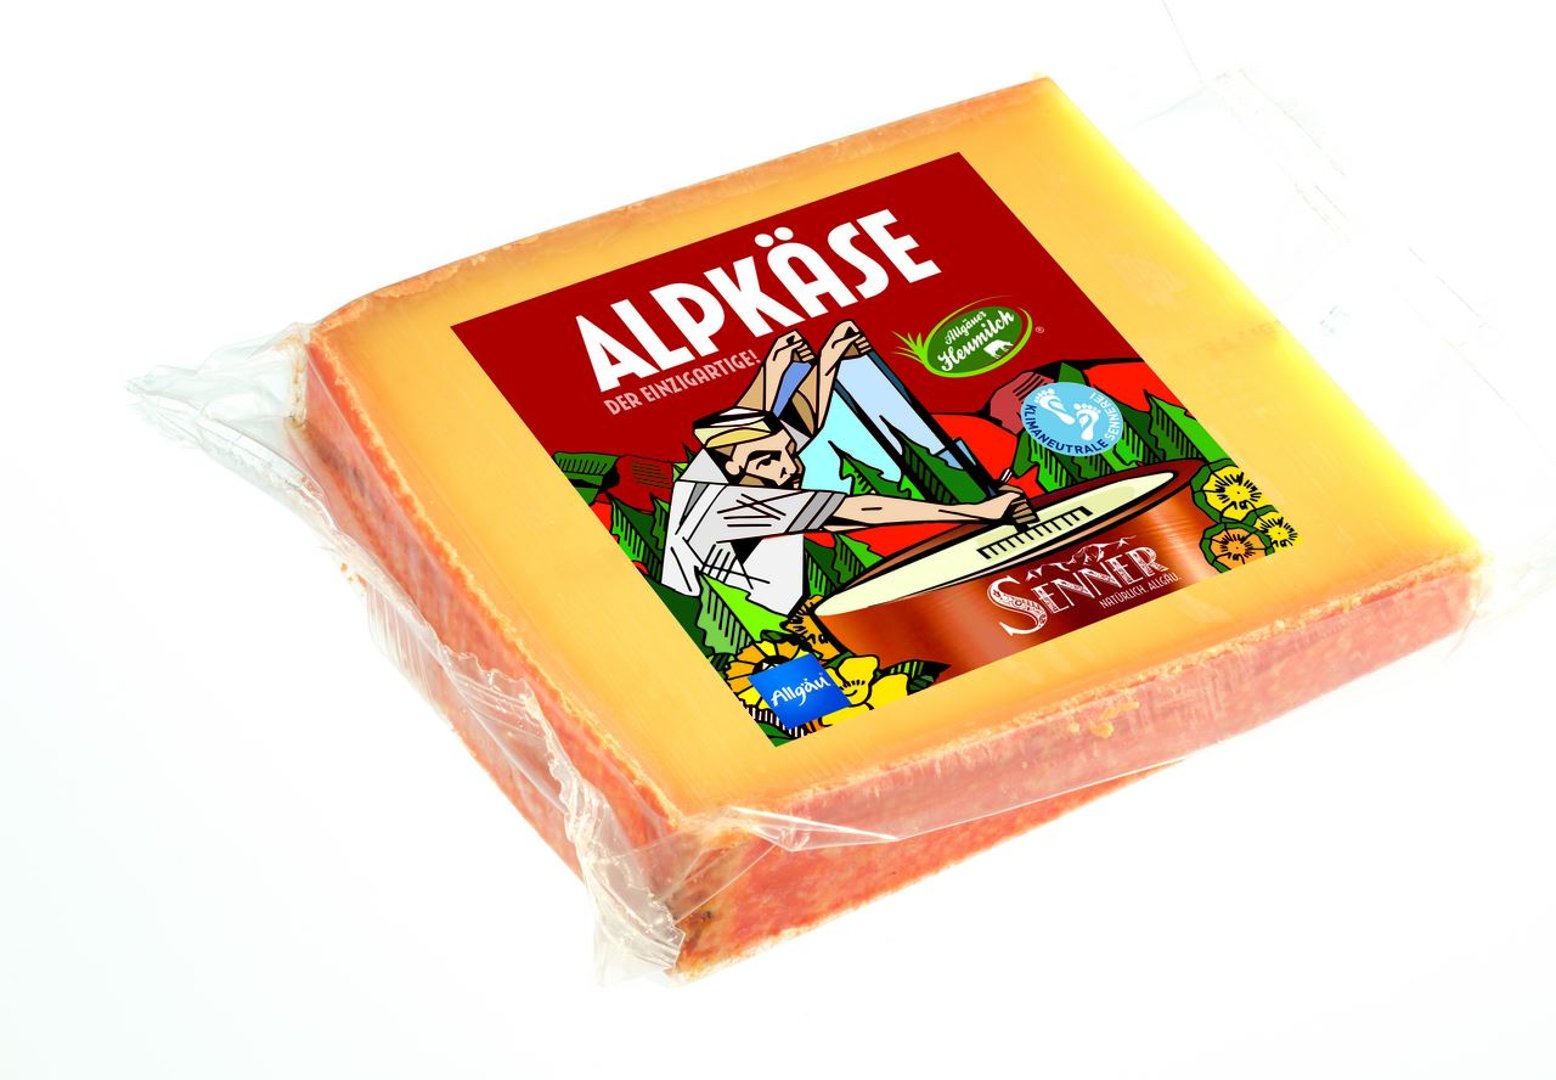 Senner - Alp-Käse 4 Monate gereift 50 % Fett i. Tr. Schnittkäse - 300 g Packung